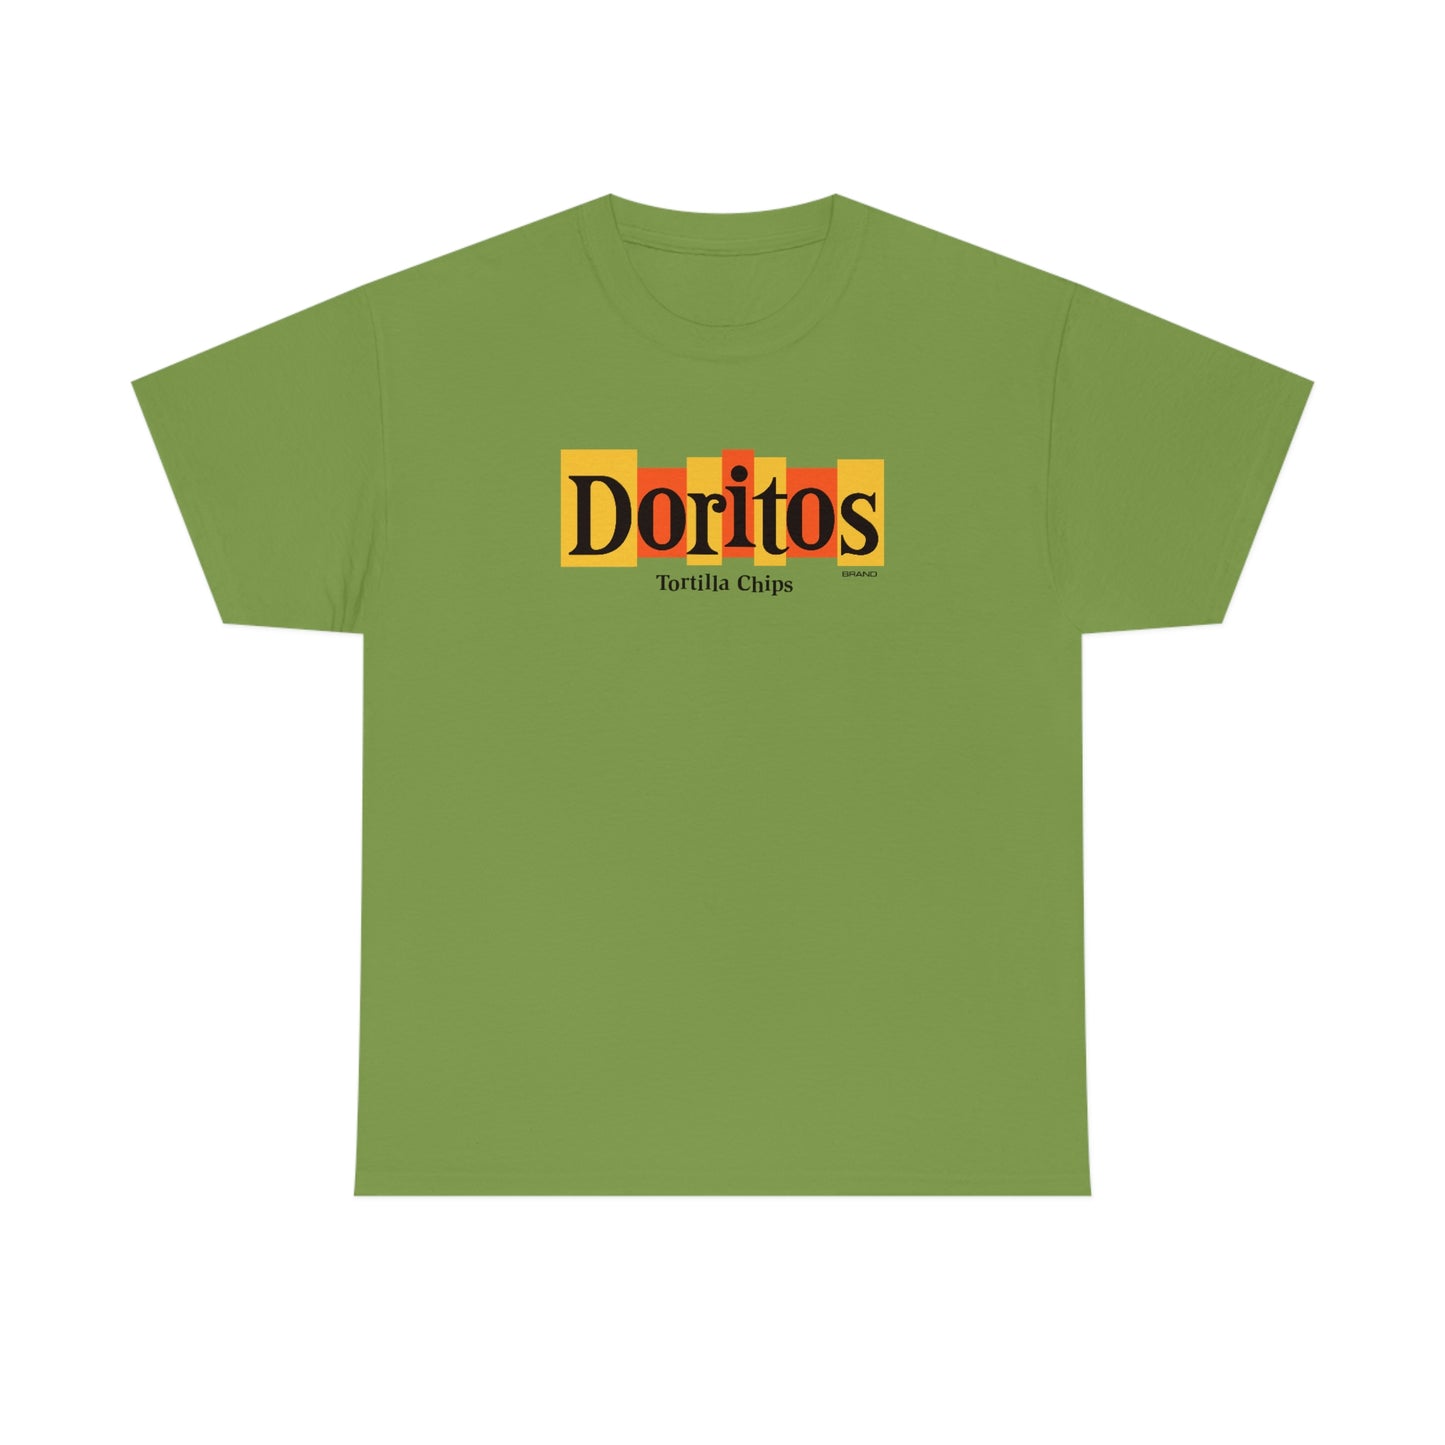 Doritos T-Shirt